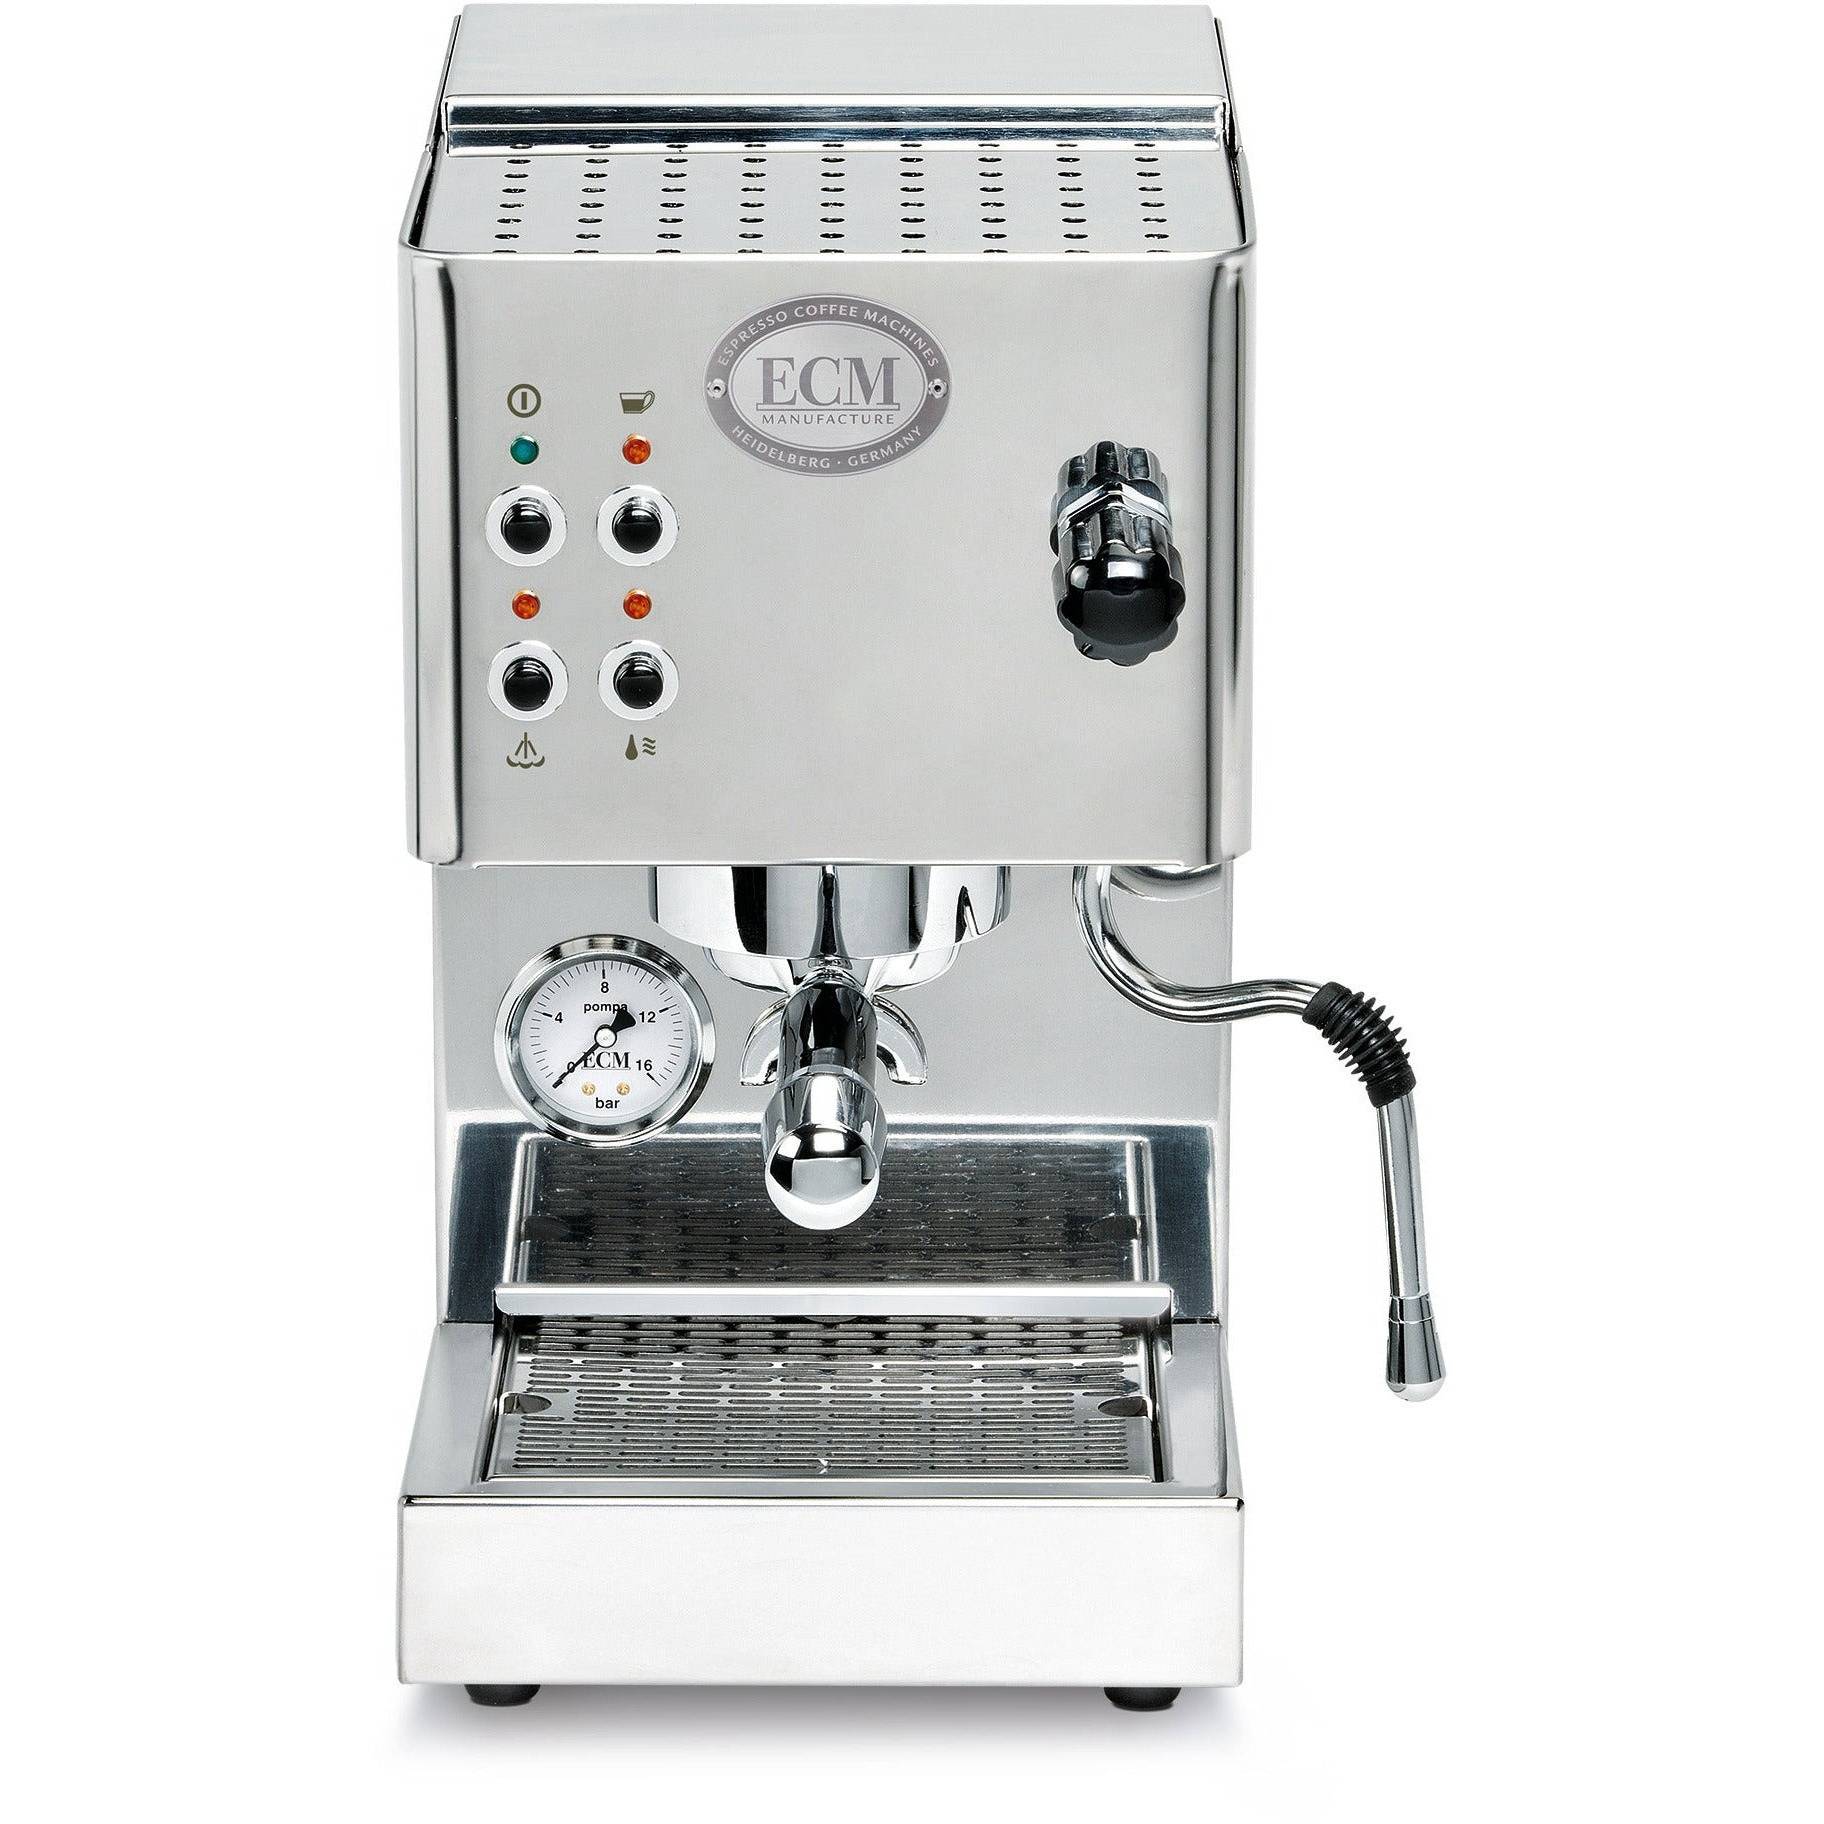 ECM Casa V - Kompakt, Schell startbereit  Einkreiser Espressomaschinen ECM Chrom / Inox   - Rheinland.Coffee